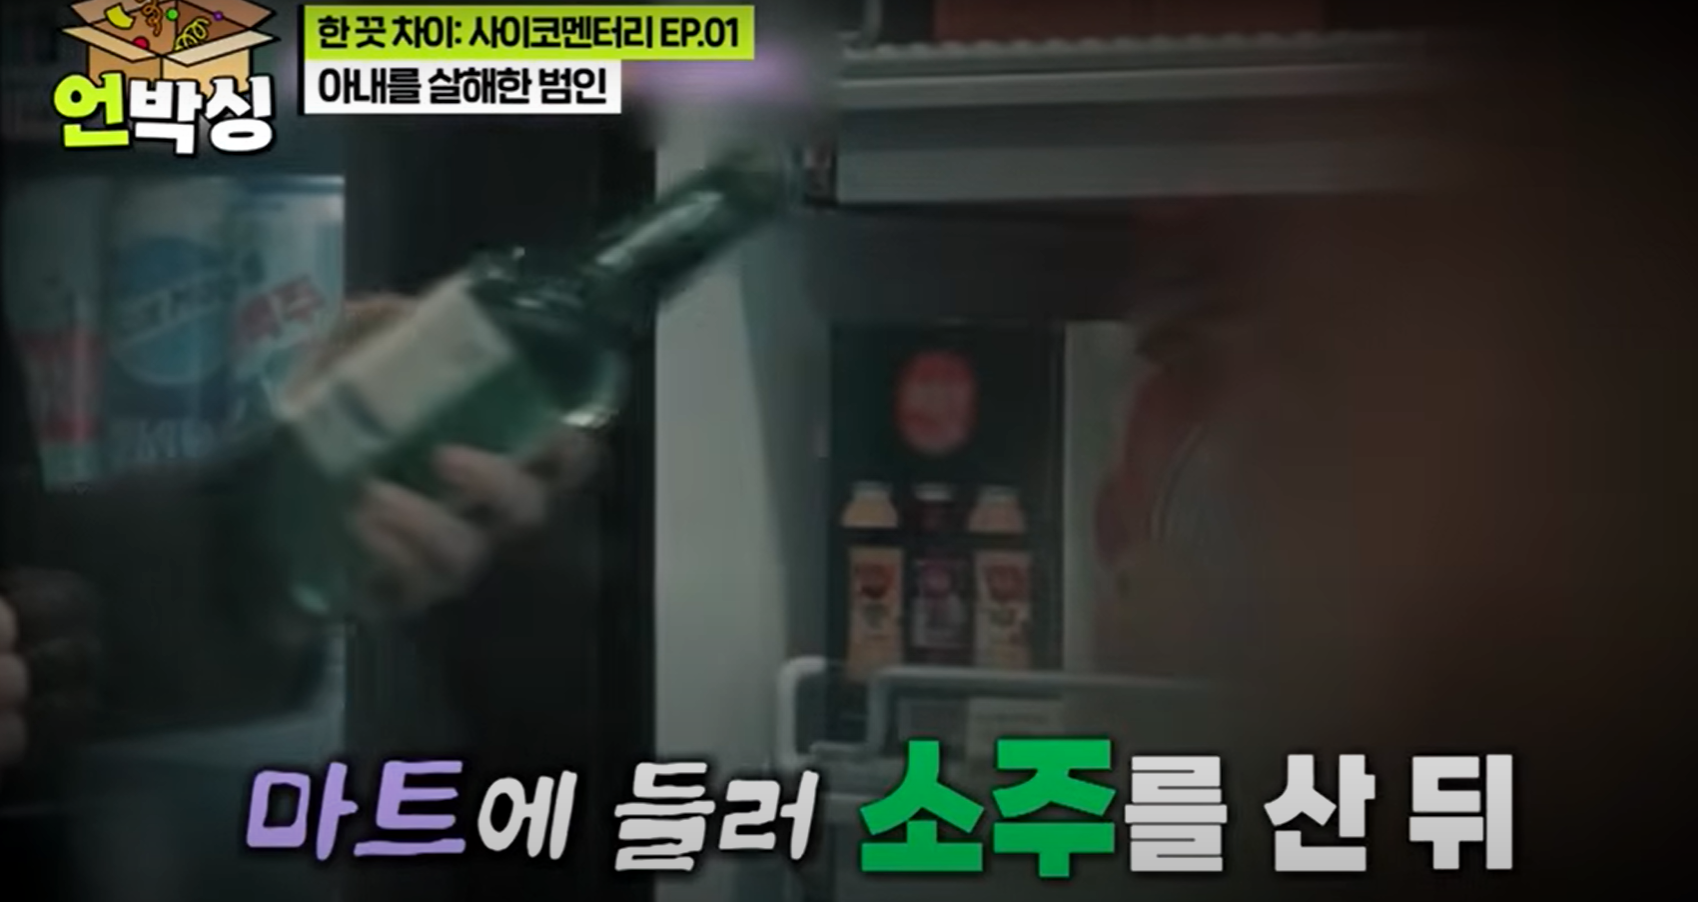 Vụ án chấn động Hàn Quốc: Tiểu tam “ghen ngược”, đầu độc chính thất bằng xyanua với loạt tình tiết gây phẫn nộ- Ảnh 1.